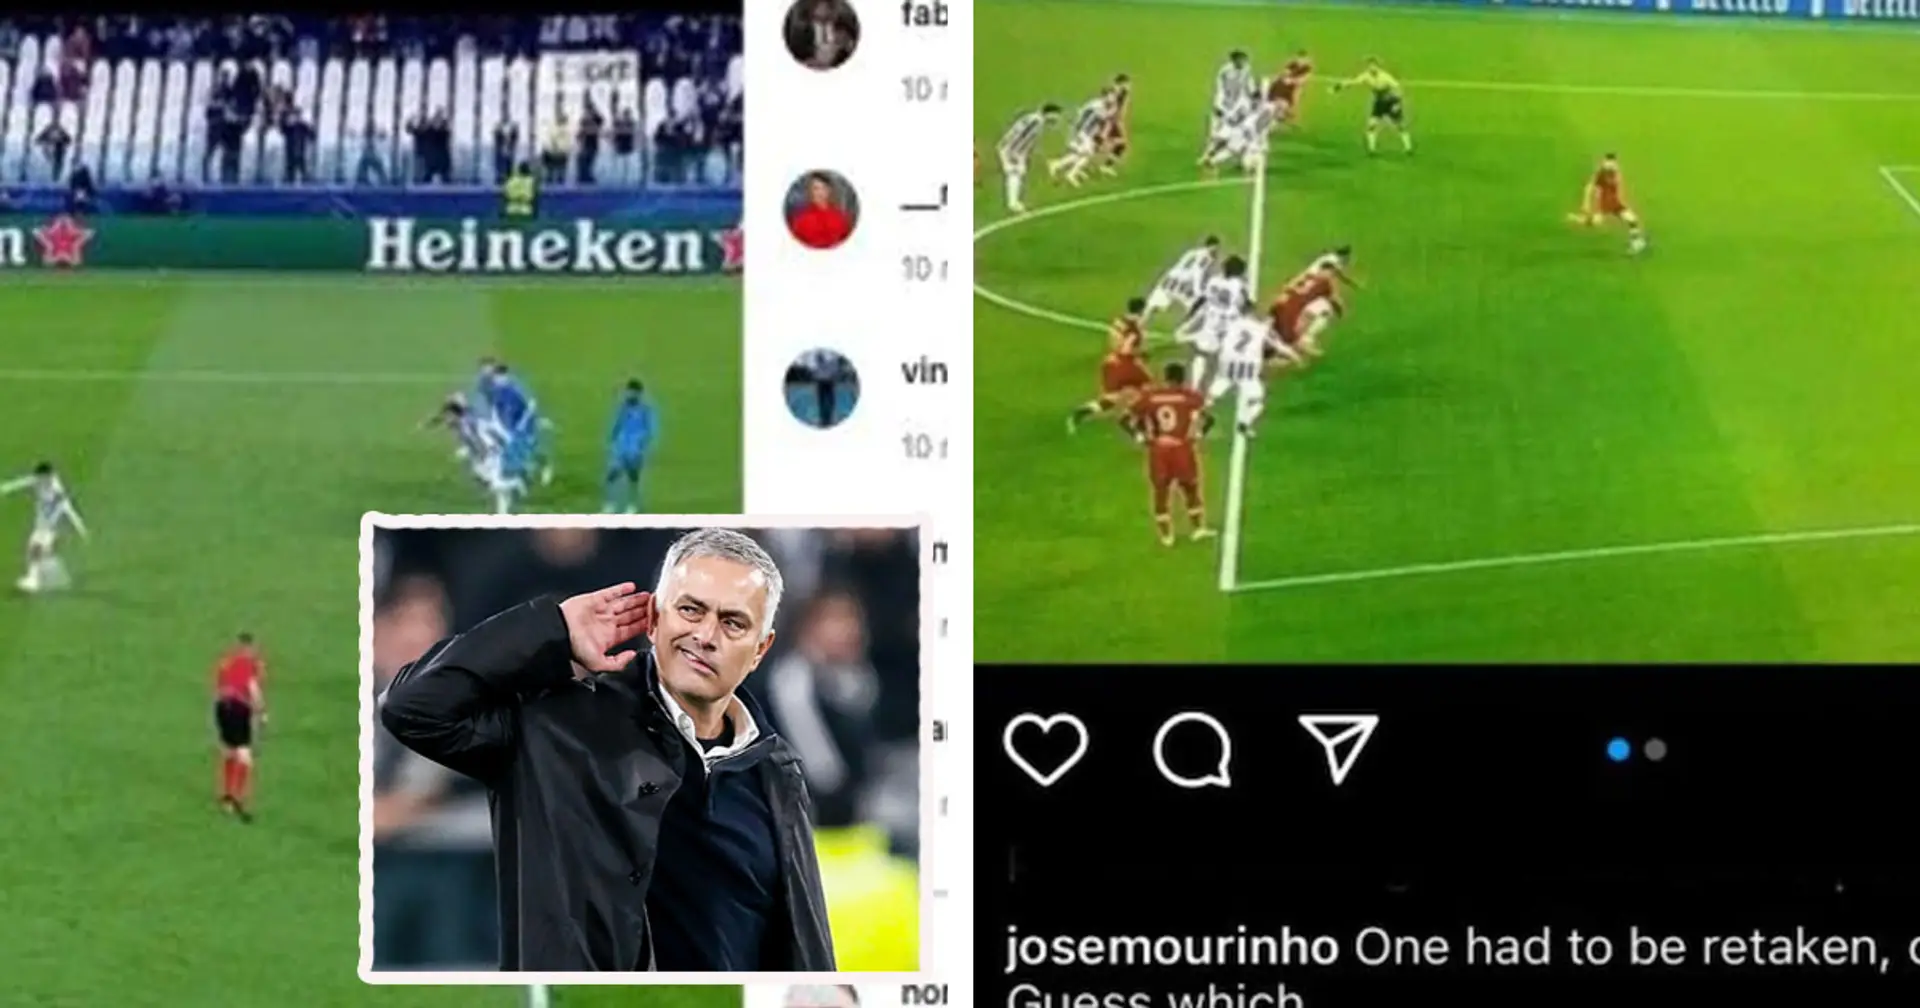 Mourinho attacca la Juve sui social dopo la vittoria contro lo Zenit: "Perchè il loro rigore ieri è stato ribattuto?"